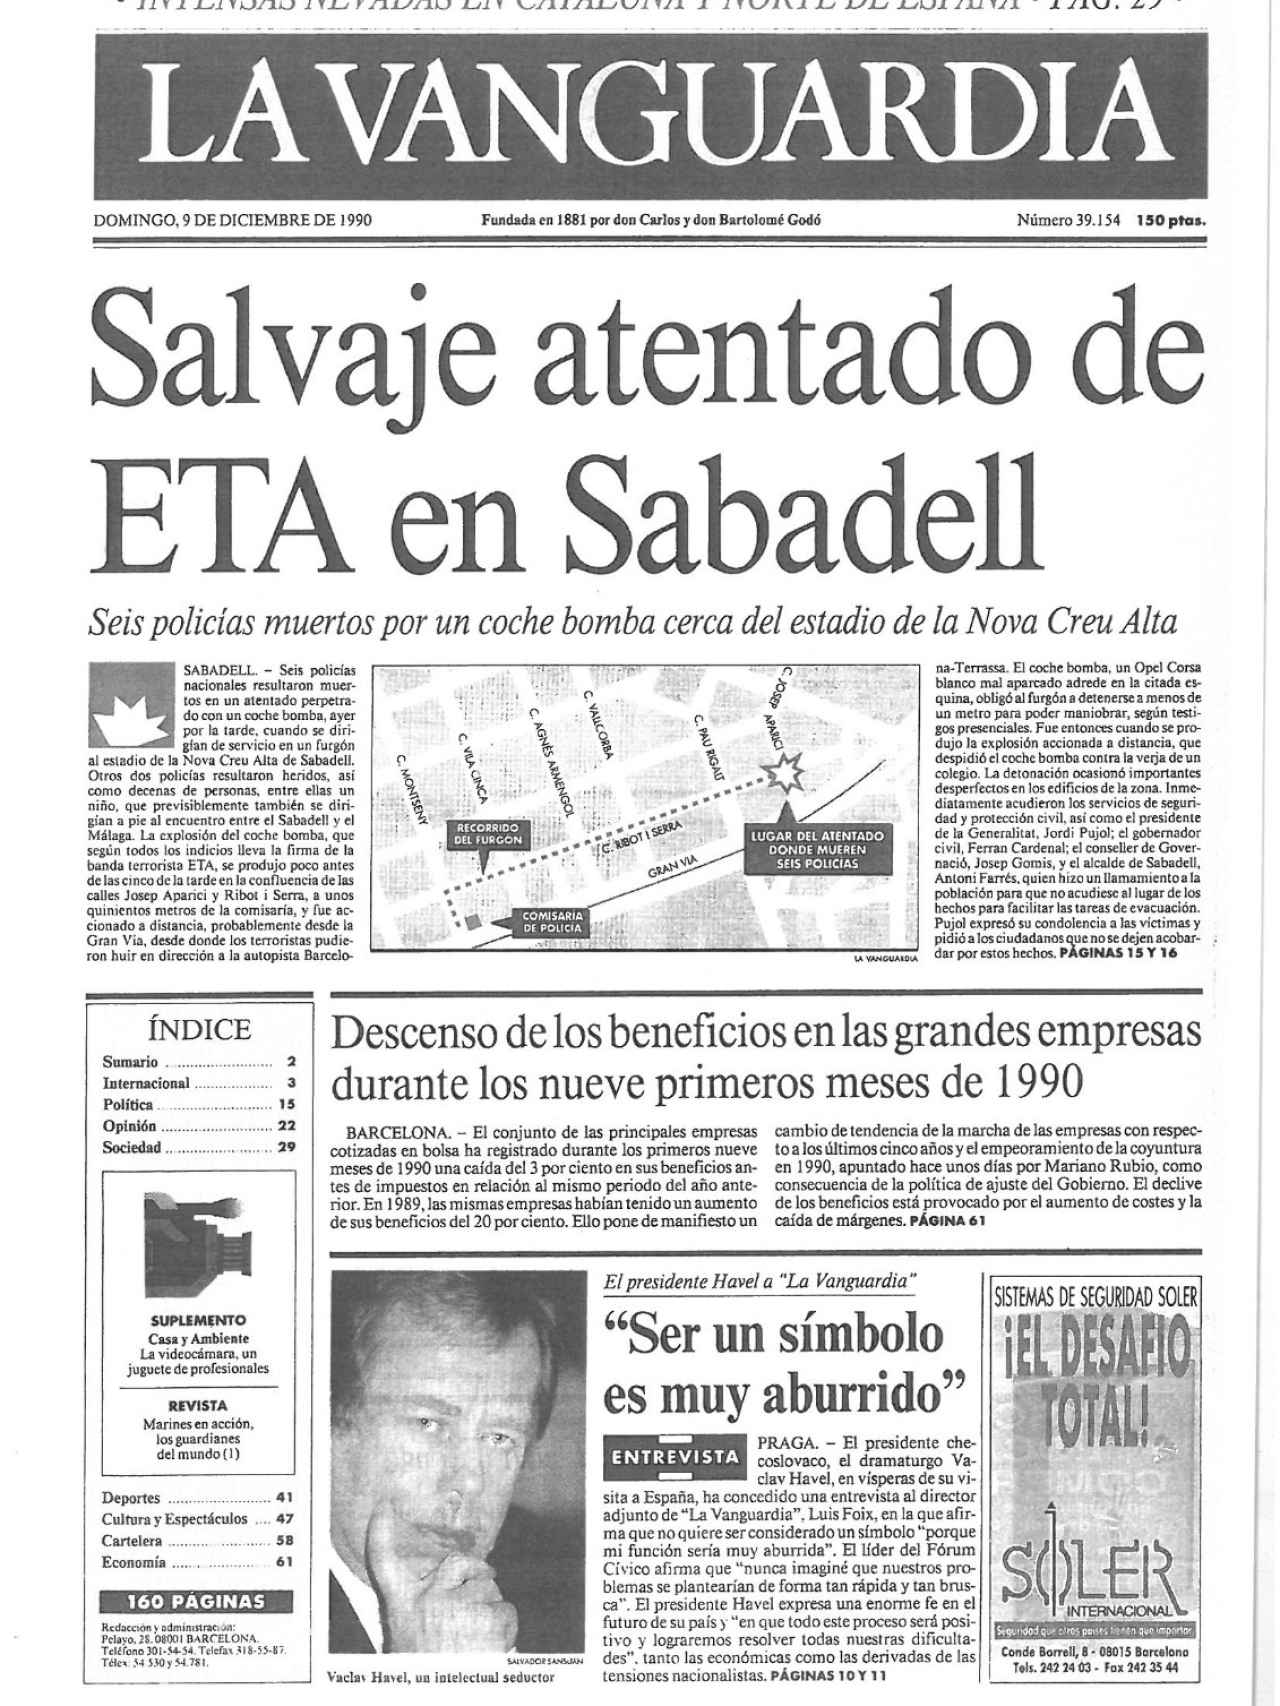 Portada al día siguiente de los hechos del periódico La Vanguardia.